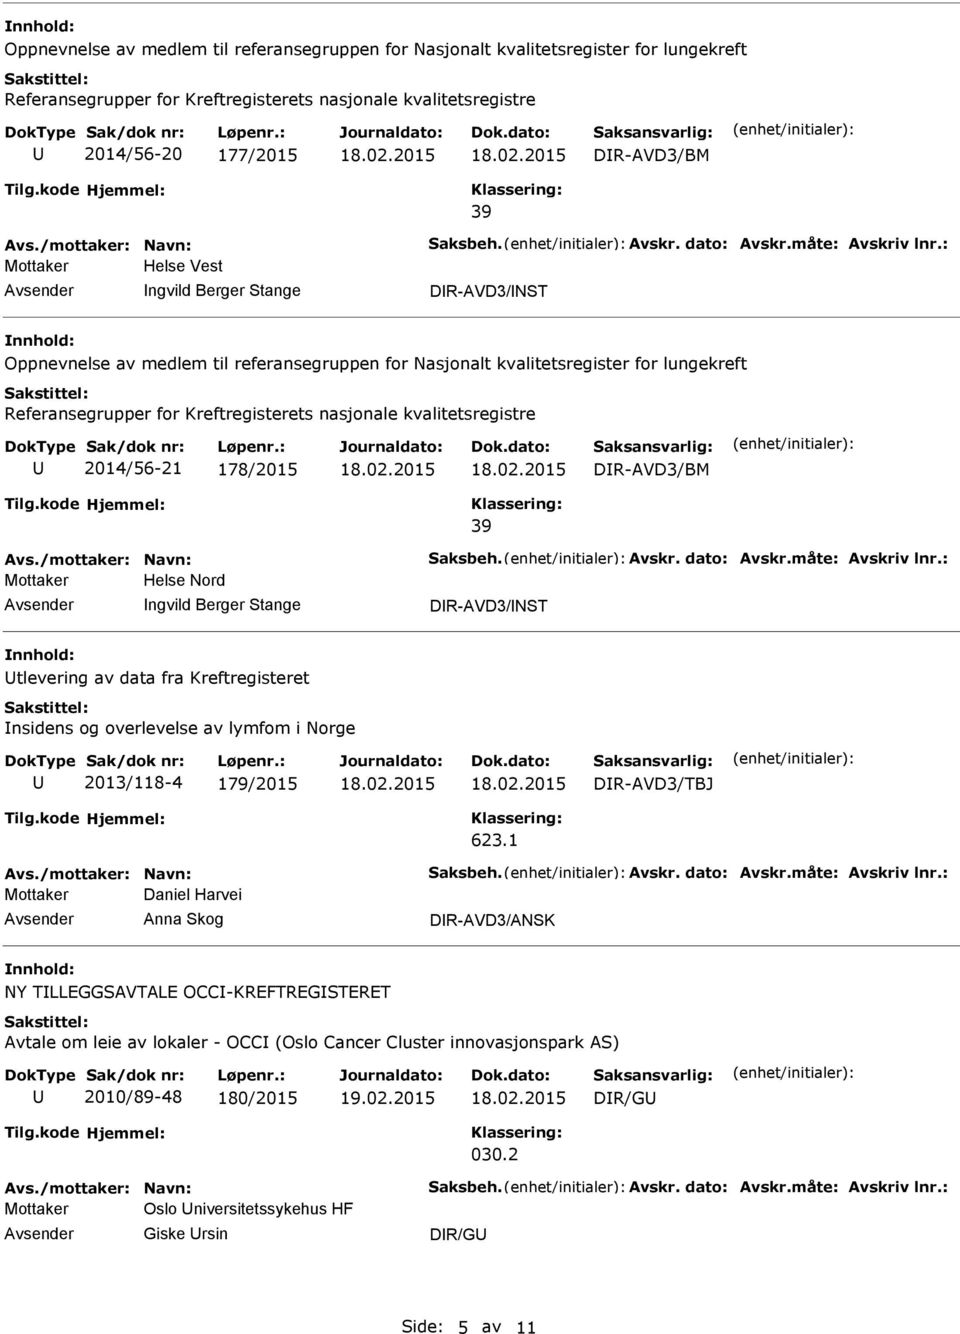 2014/56-21 178/2015 DR-AVD3/BM 39 Mottaker Helse Nord ngvild Berger Stange DR-AVD3/NST tlevering av data fra Kreftregisteret nsidens og overlevelse av lymfom i Norge 2013/118-4 179/2015 DR-AVD3/TBJ